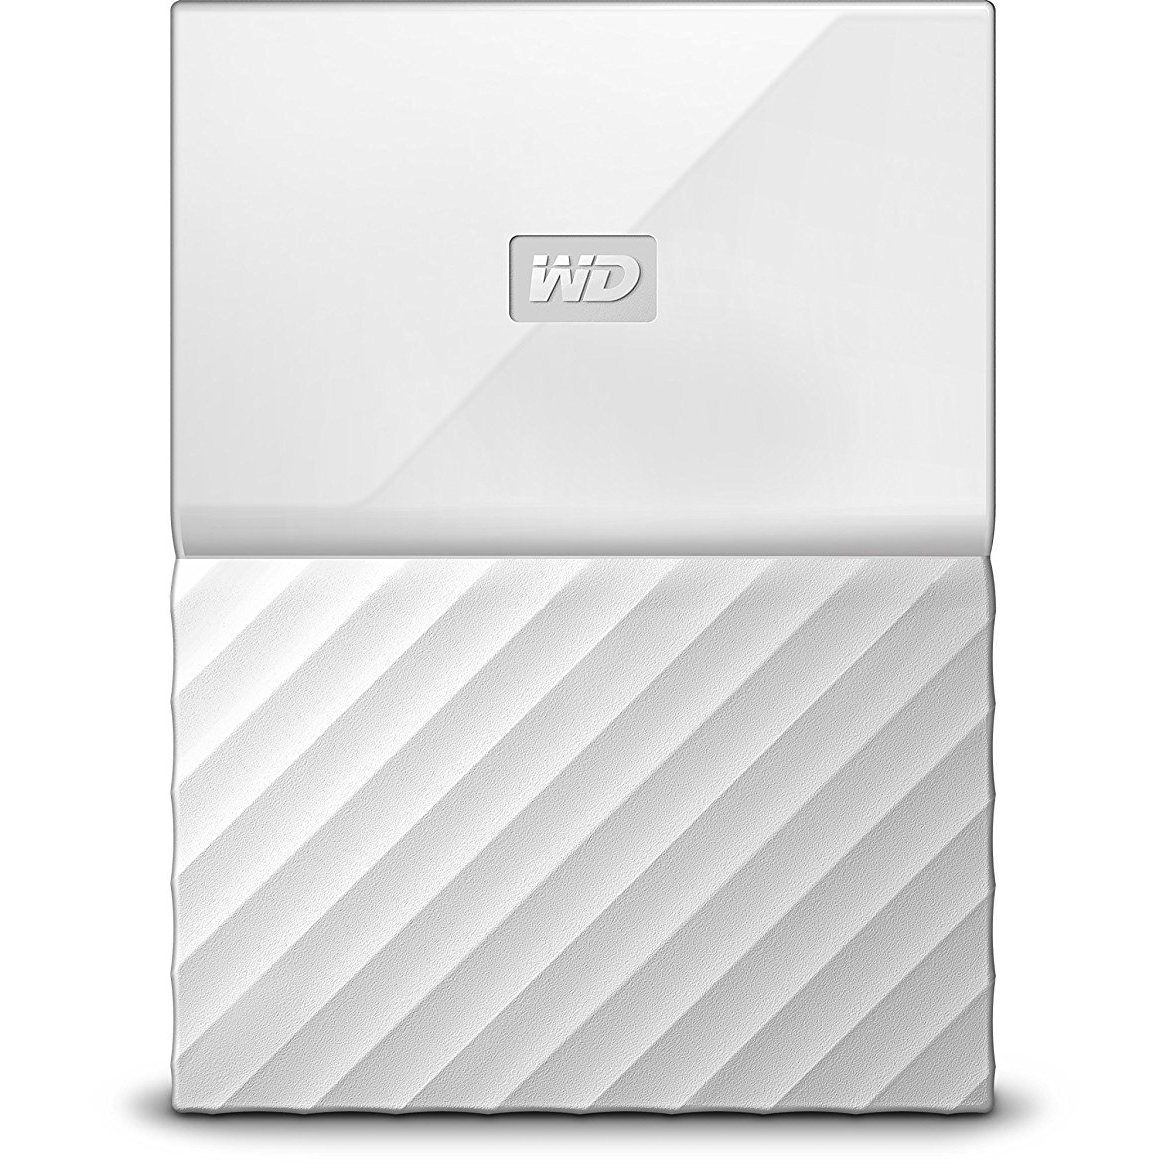 Original Western Digital My Passport 2TB White USB 3.0 External Hard Drive (WDBS4B0020BWT-EEEX)